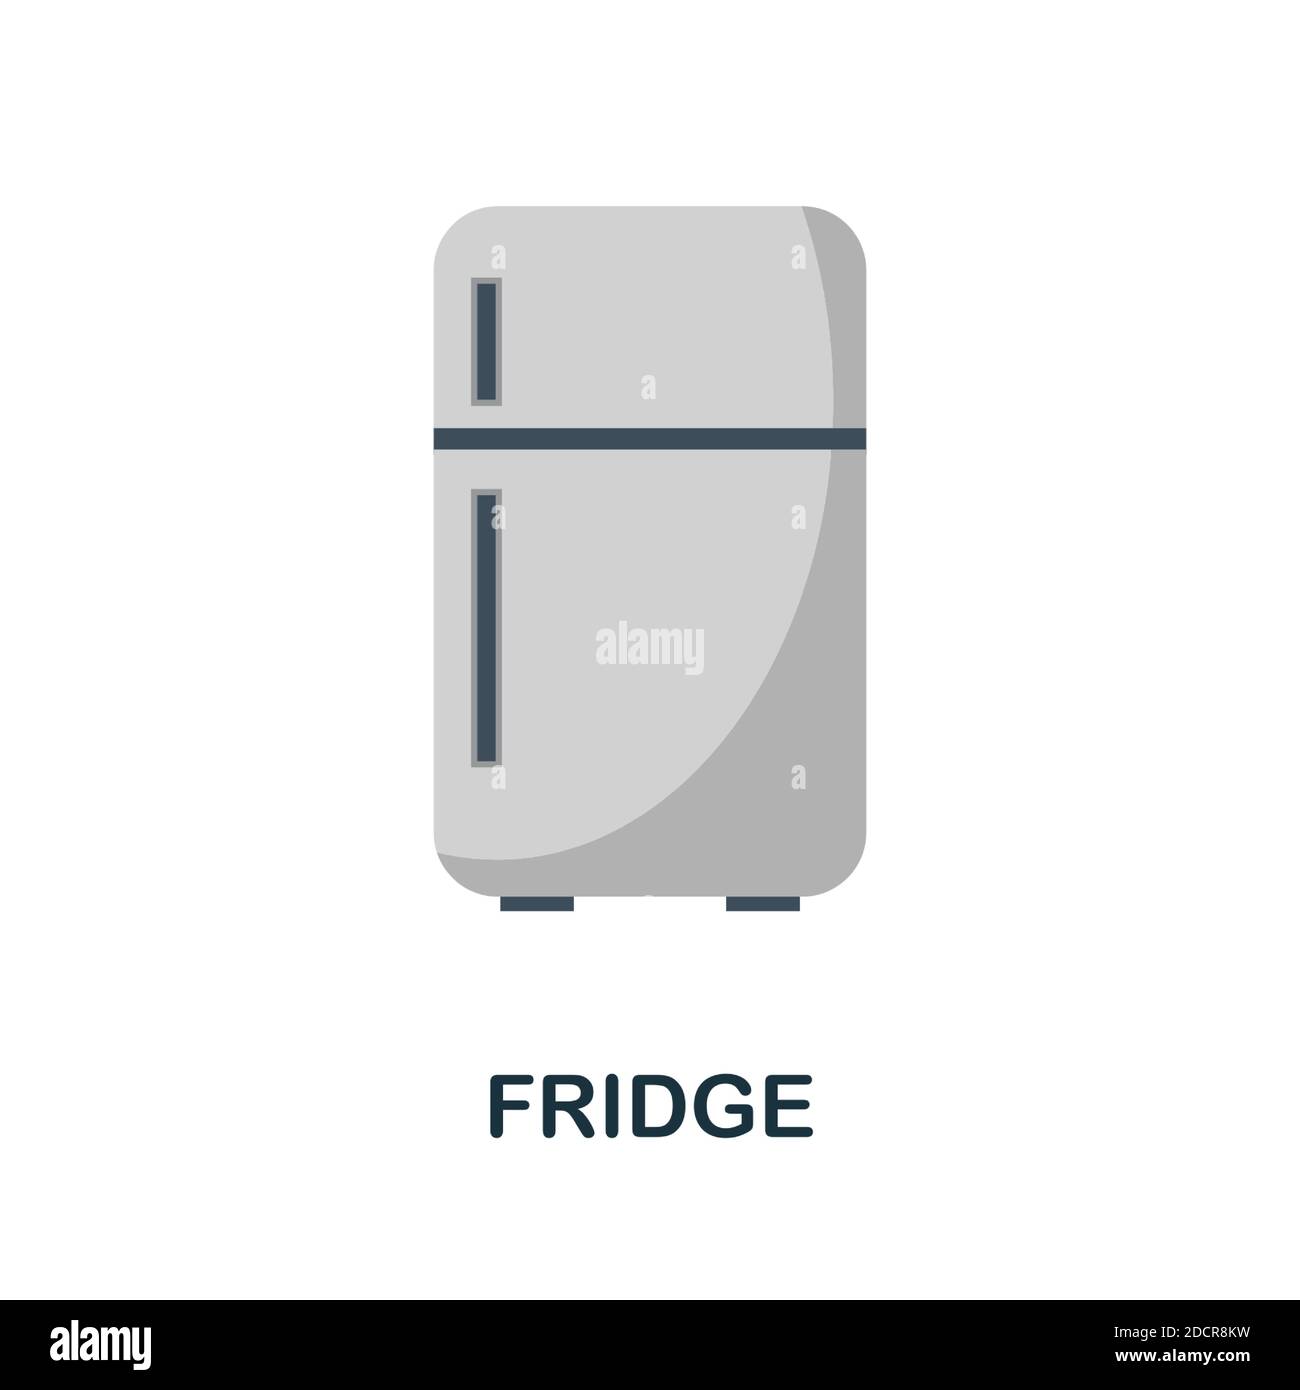 Icône du réfrigérateur. Un élément simple de la collection d'appareils électroménagers. Icône de réfrigérateur créative pour la conception Web, les modèles, les infographies et bien plus encore Illustration de Vecteur